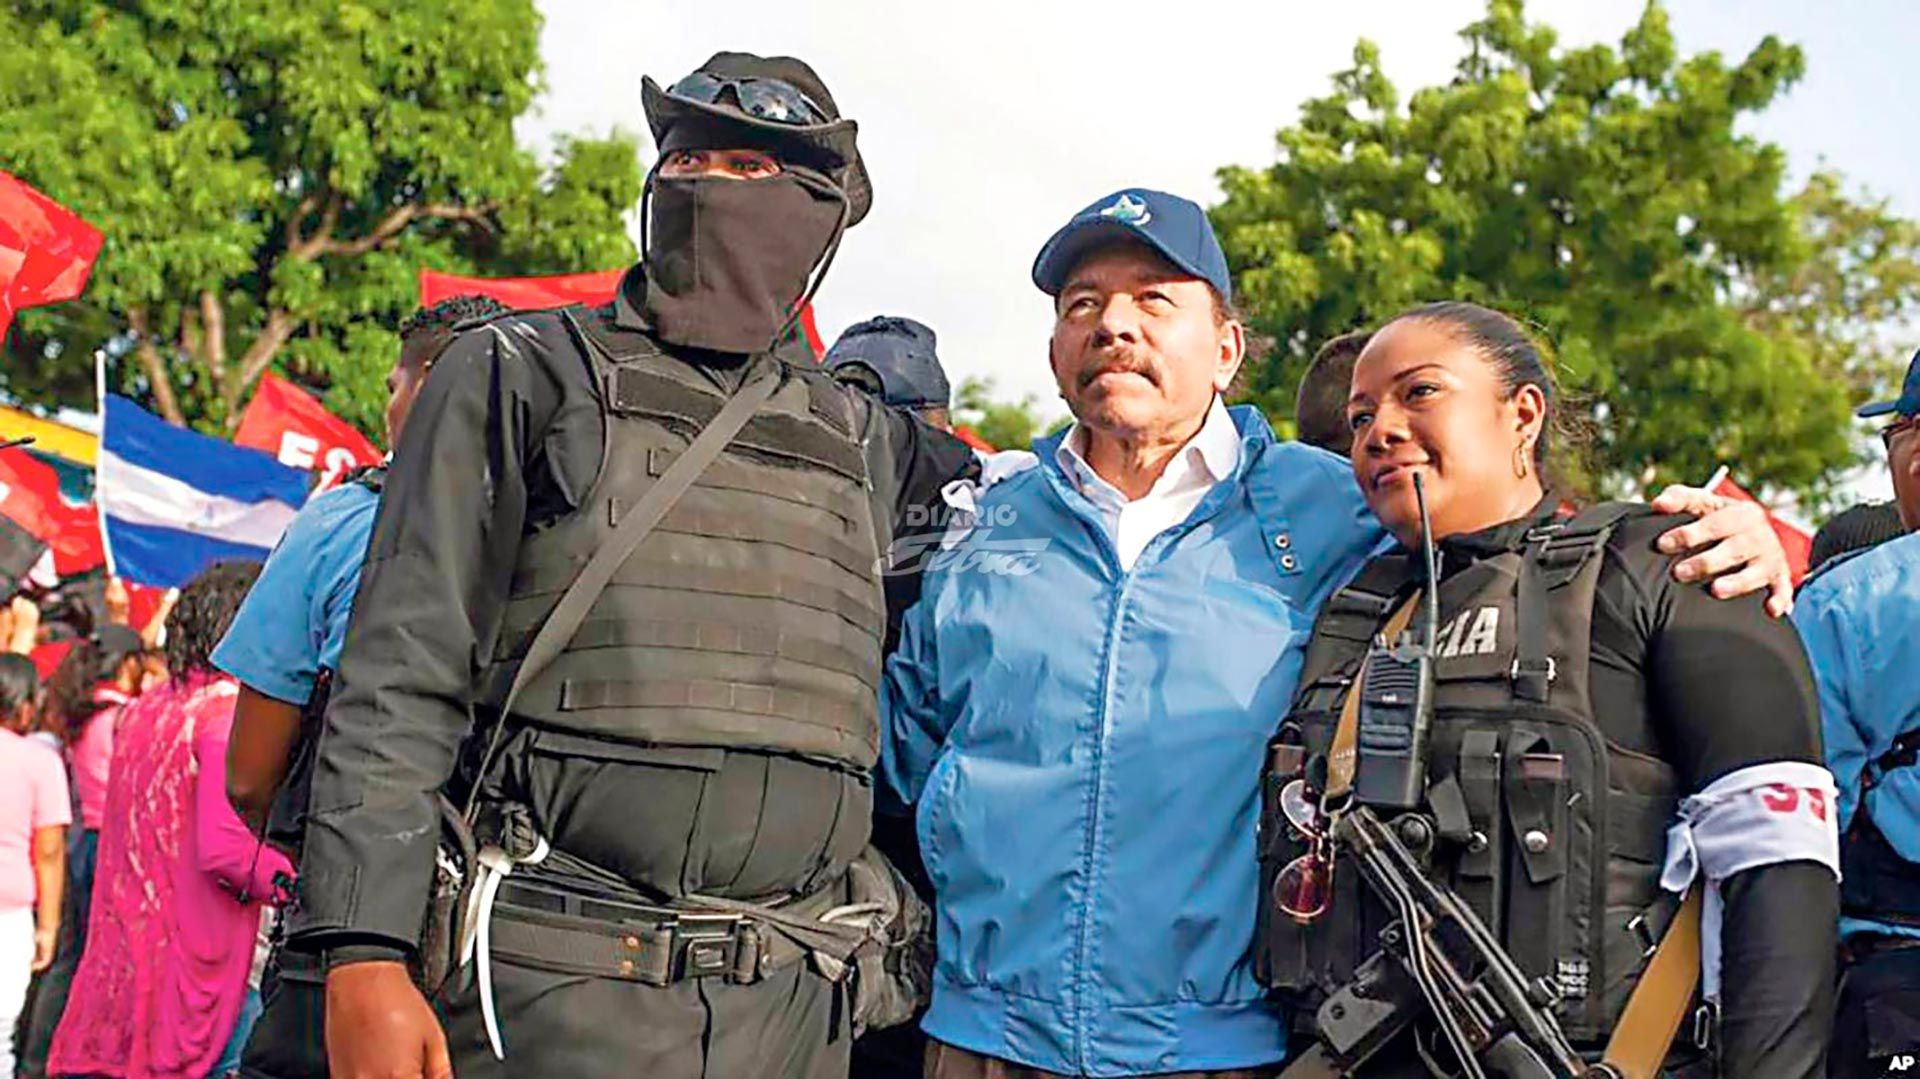 Daniel Ortega creó un ejército paramilitar para sofocar la rebelión ciudadana que inició en abril del 2018 en Nicaragua. Inicialmente negó su existencia y la atribuyó a montajes, luego dijo que eran ciudadanos sandinistas armados para defenderse y finalmente aseguró que era “policías voluntarios”.